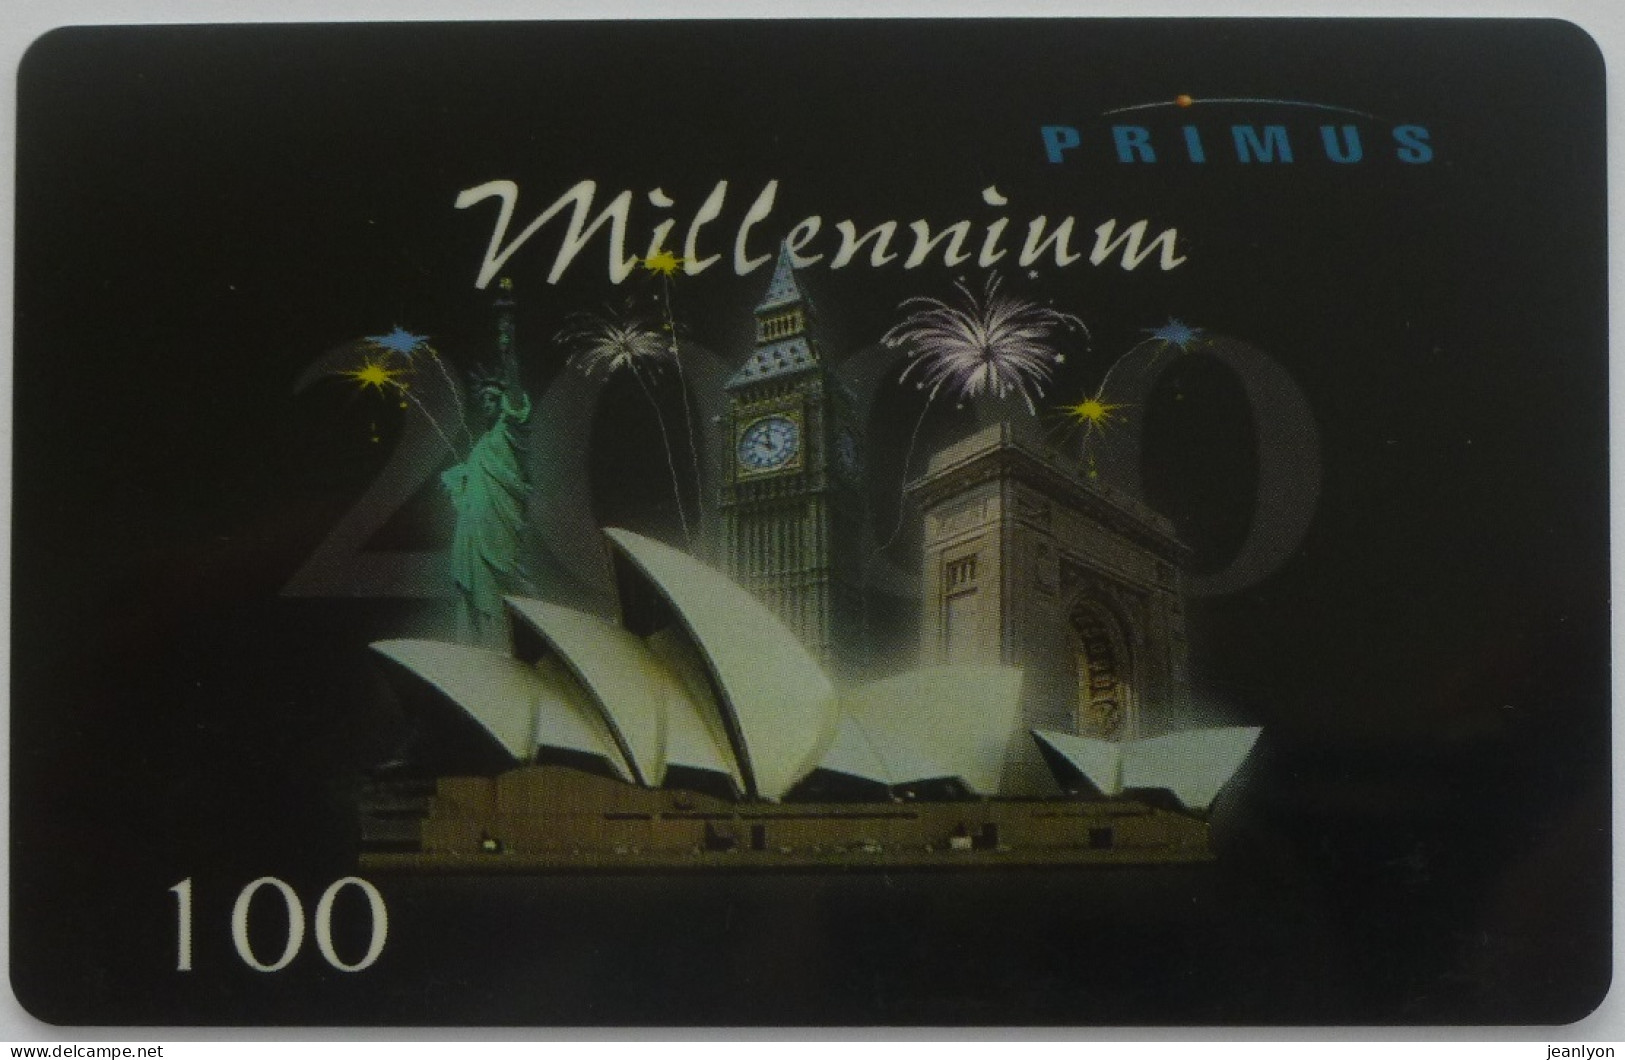 MILLENNIUM 2000 / Arc Triomphe - Big Ben - Statue Liberté - Carte Téléphone Prépayée PRIMUS Utilisée - Landschaften